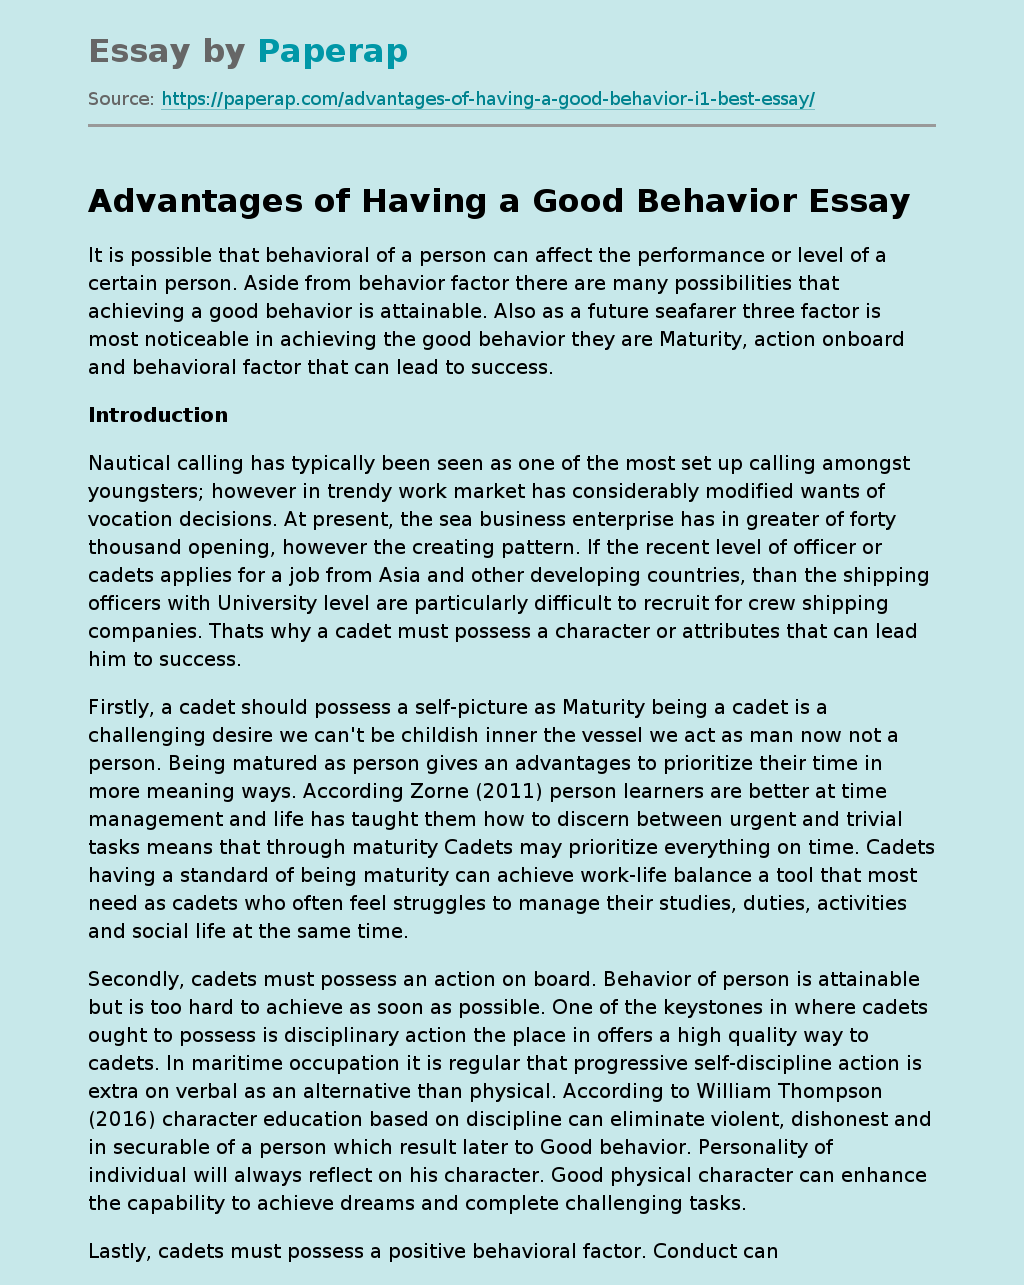 Advantages of Having a Good Behavior